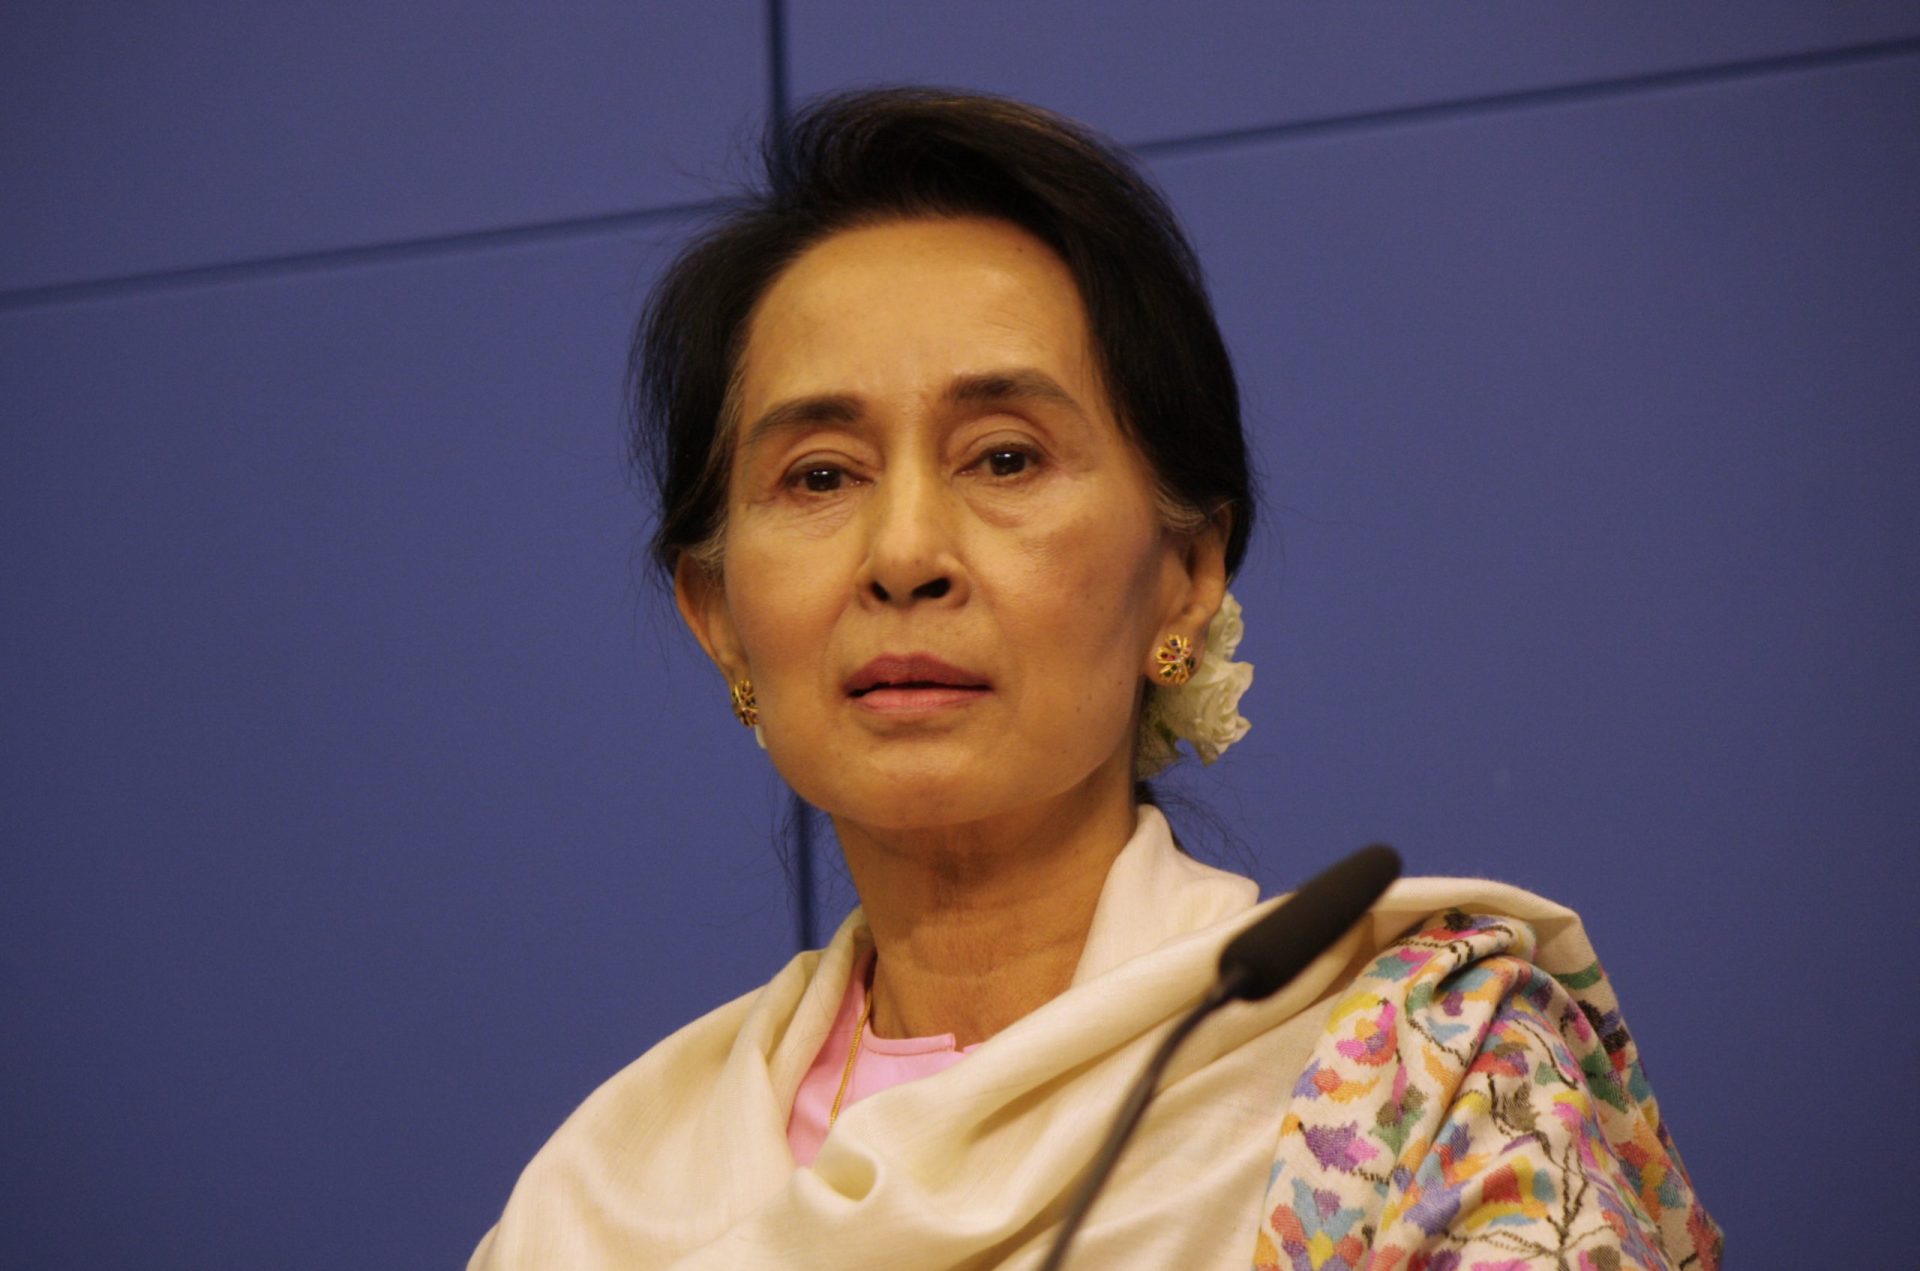 Dalai Lama insta Aung San Suu Kyi a agir em relação aos rohingyas na Birmânia